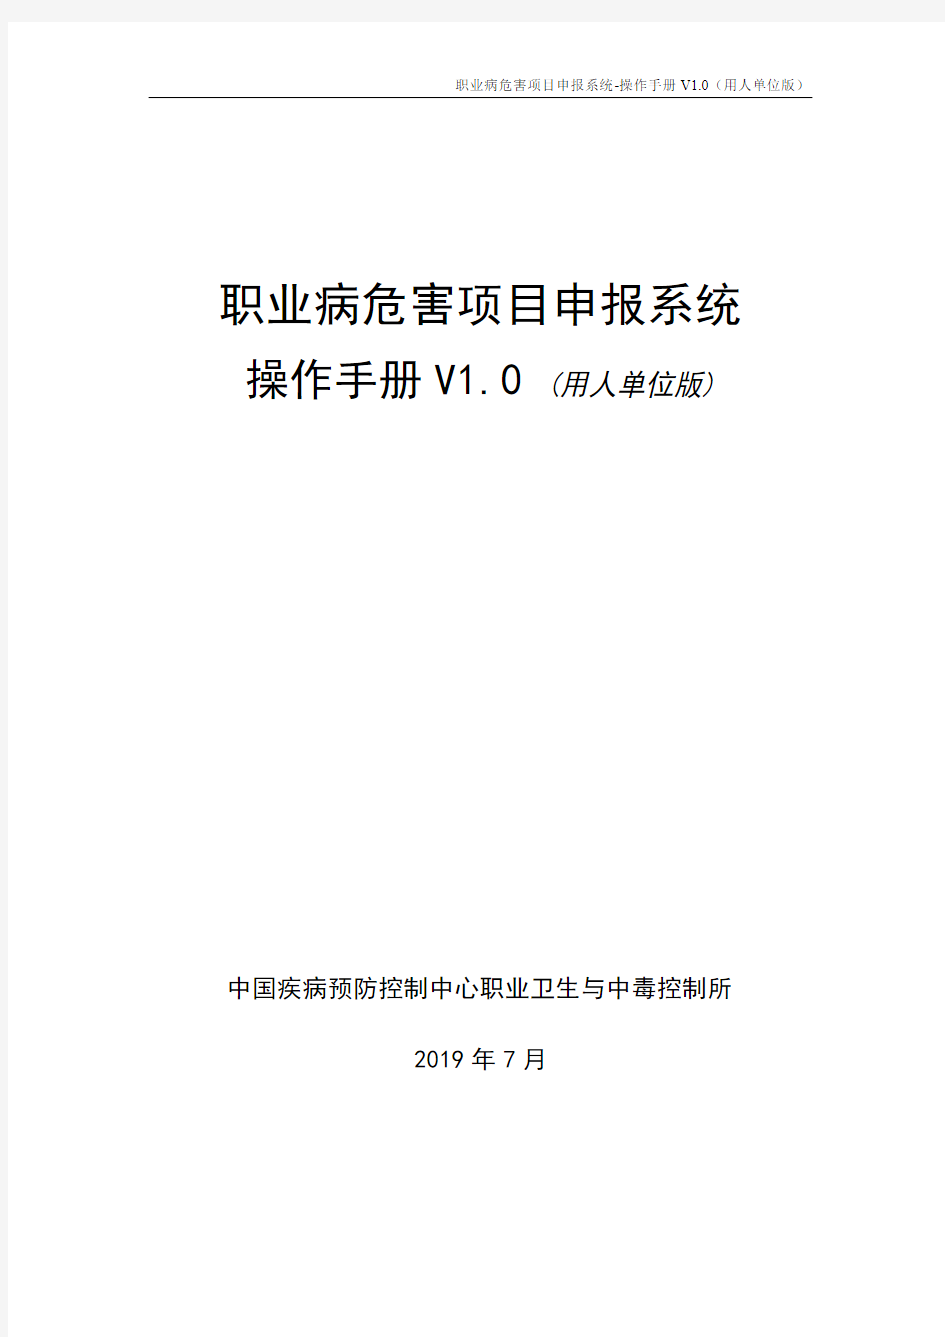 2019职业病危害项目申报系统-操作手册 V1.0(用人单位版)